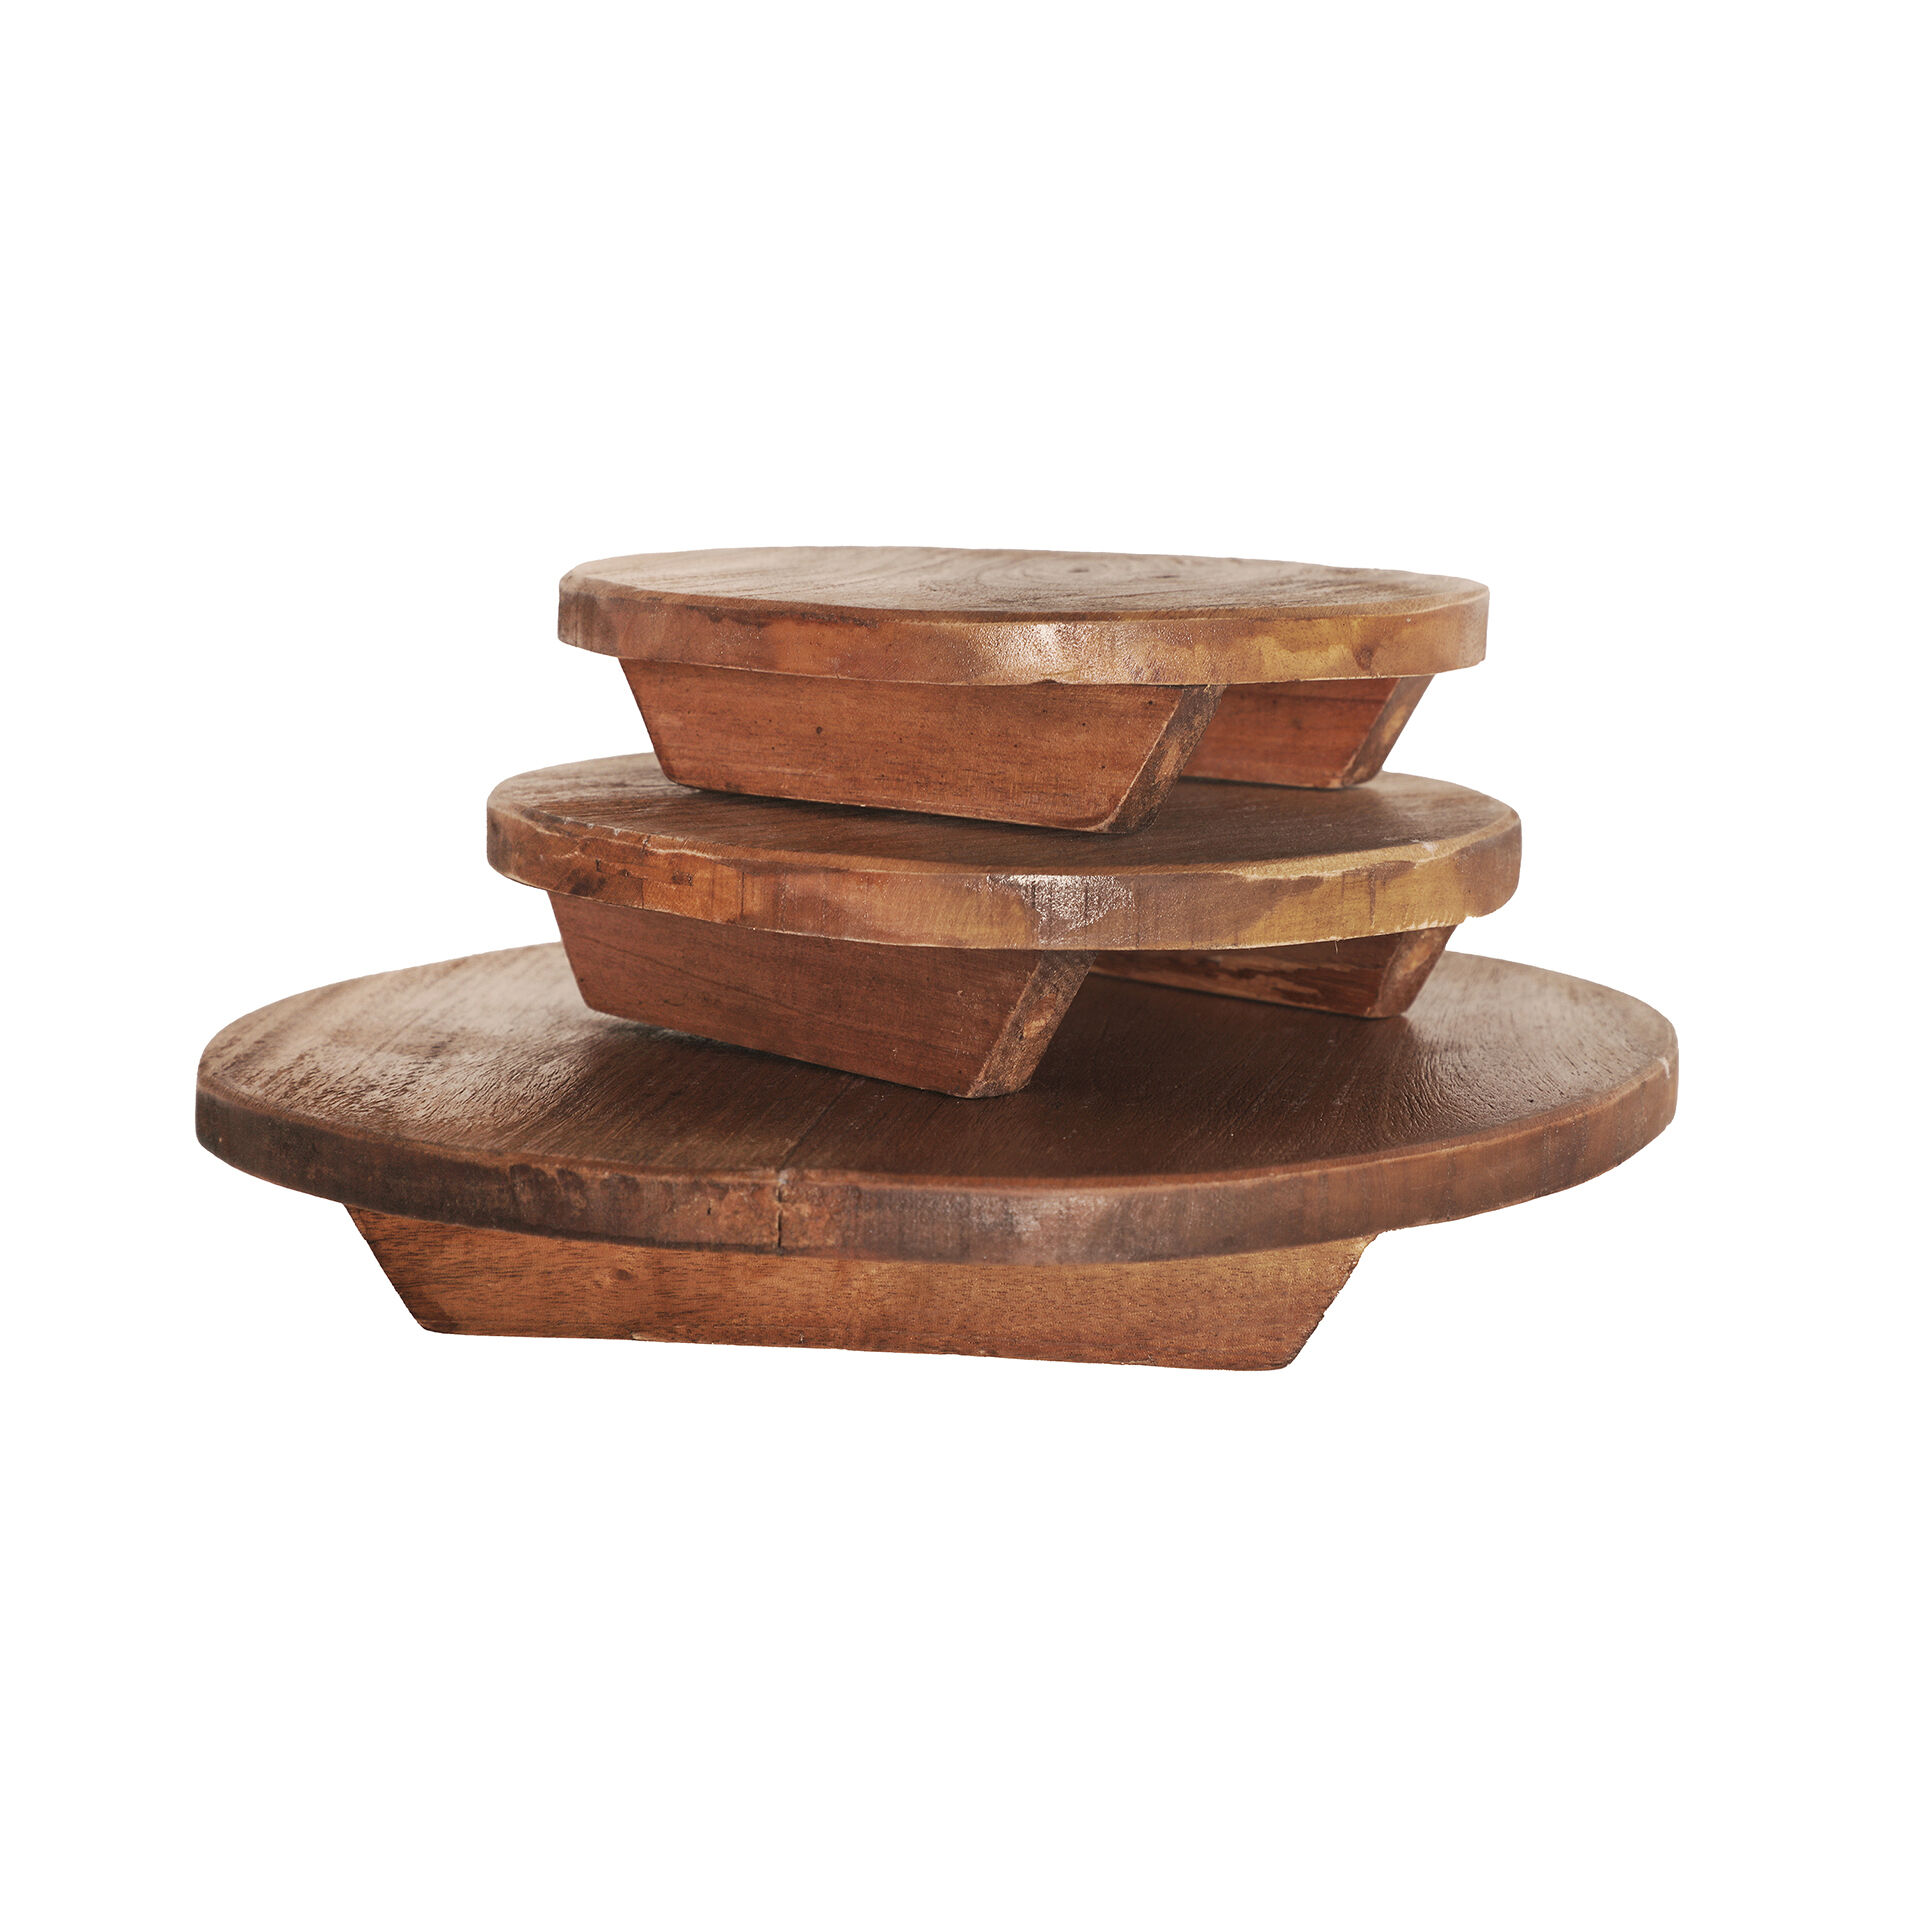 Lastdeco Tabla de madera de mahogany en color marrón de 29x29x4cm - pack de 3